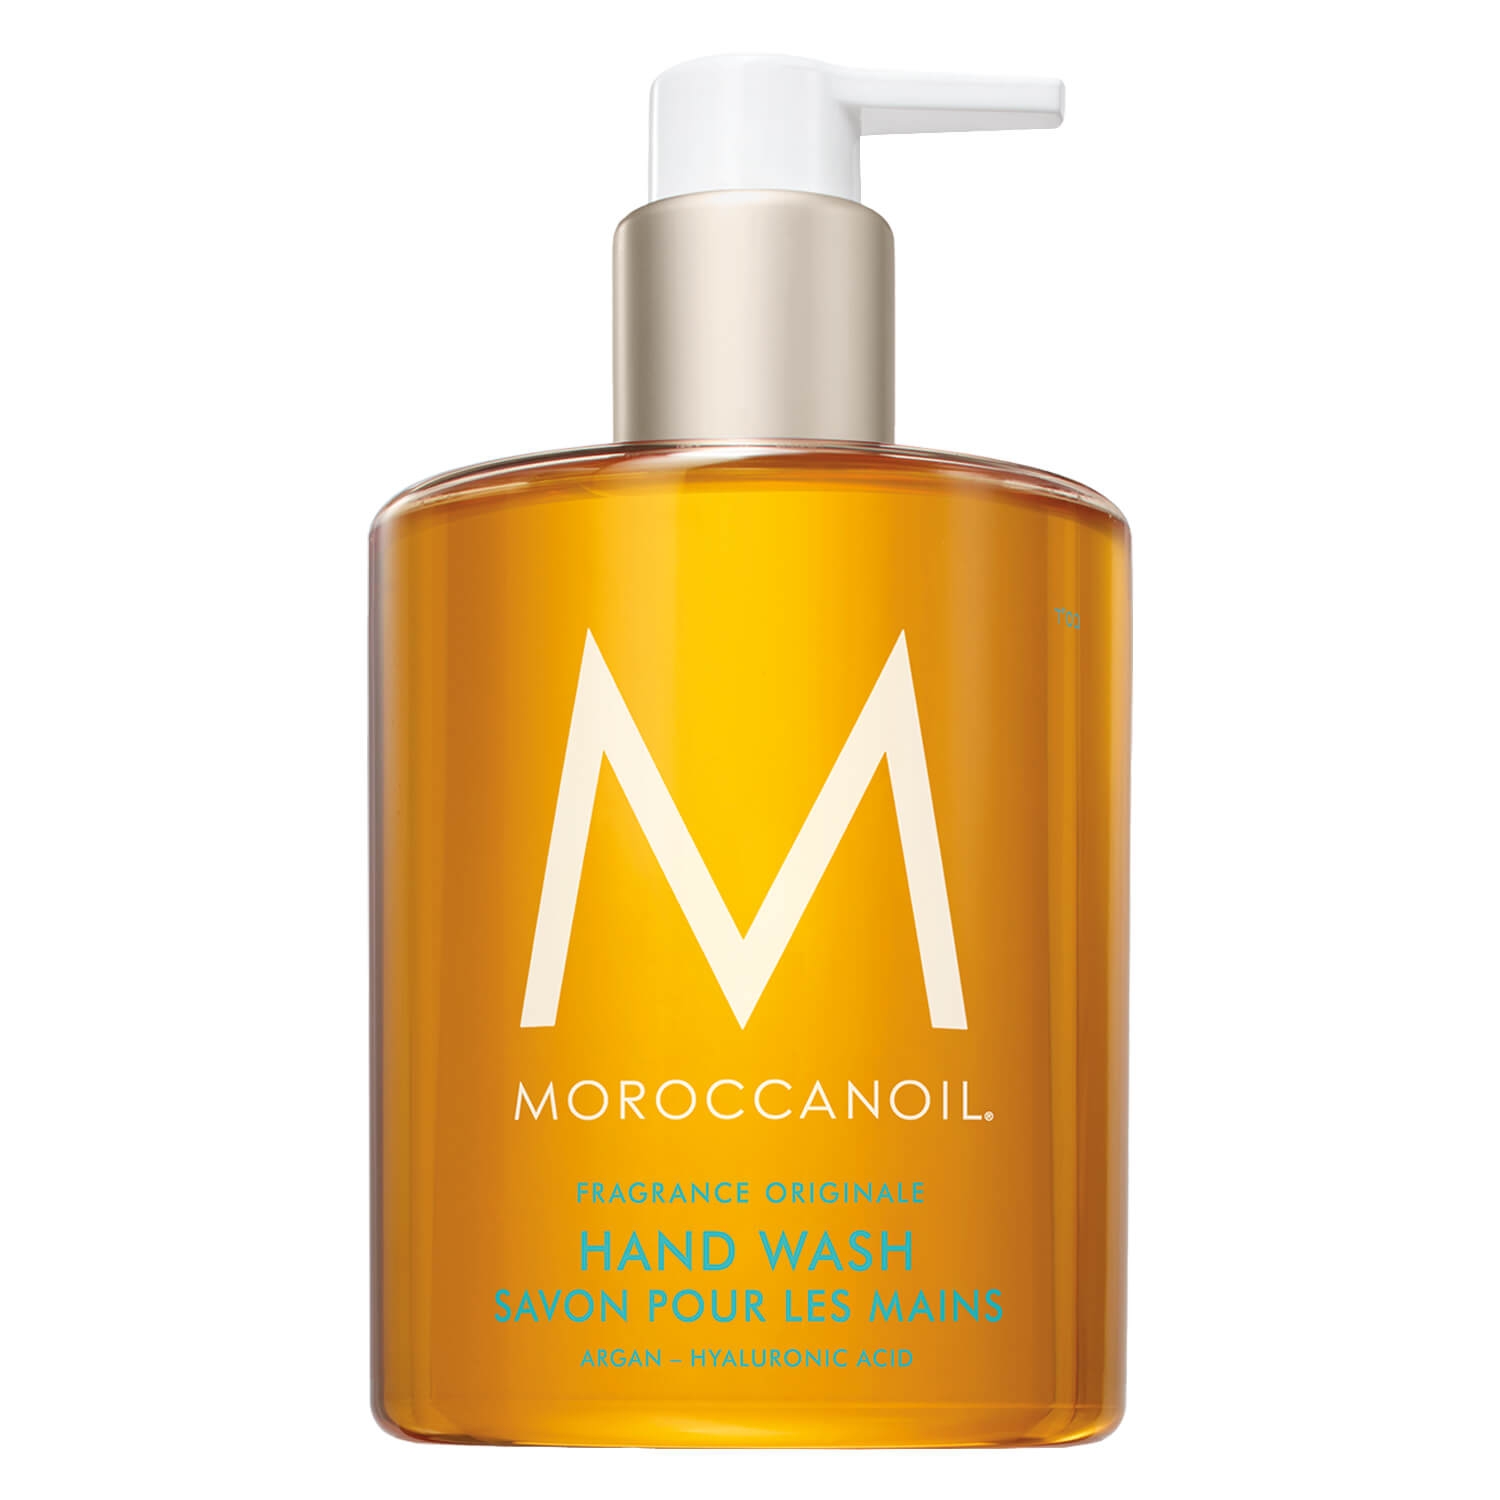 Produktbild von Moroccanoil Hand Wash Fragrance Originale